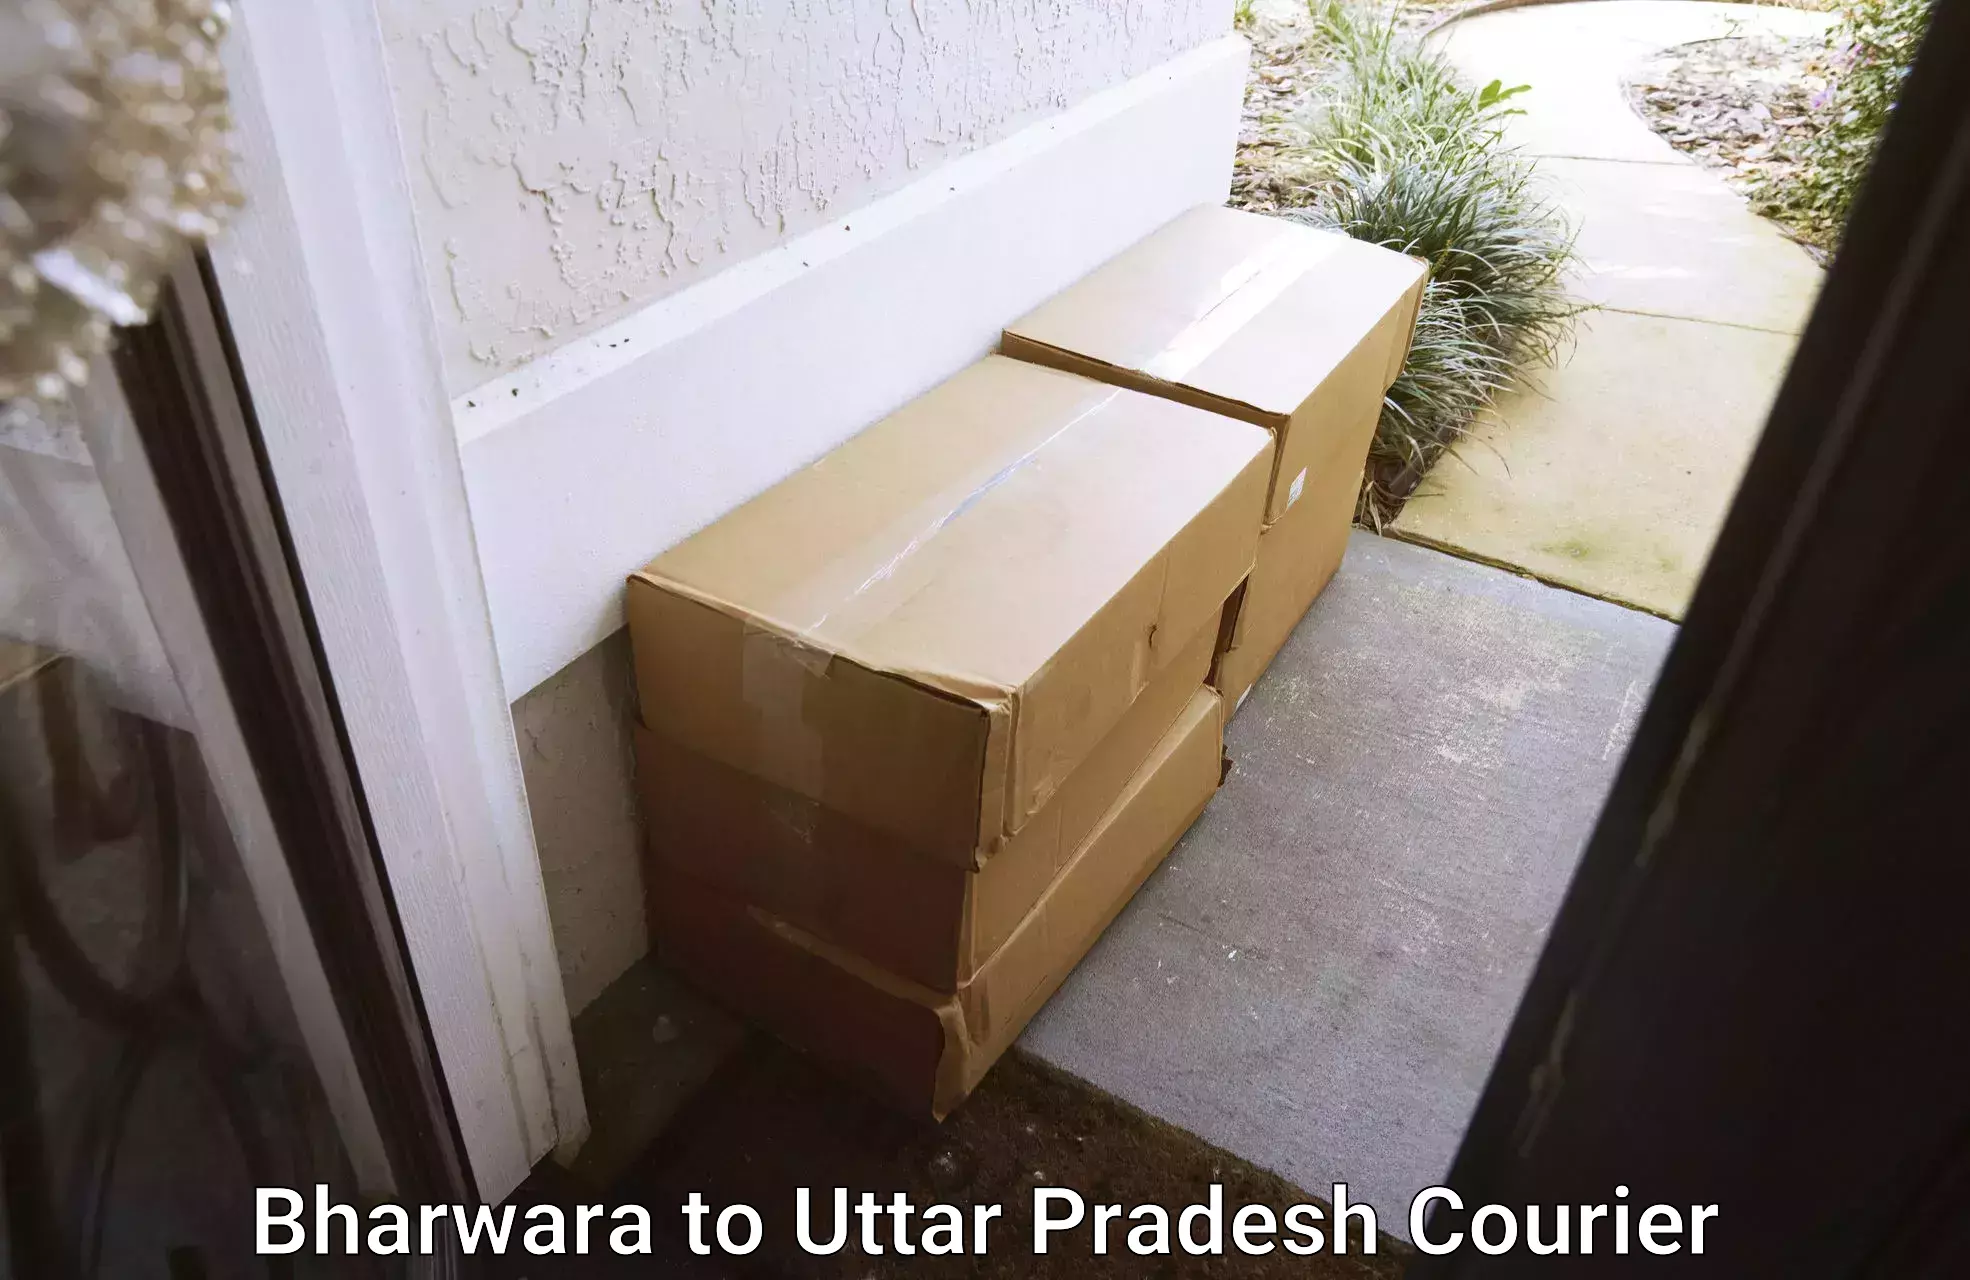 Furniture moving experts Bharwara to Kanth